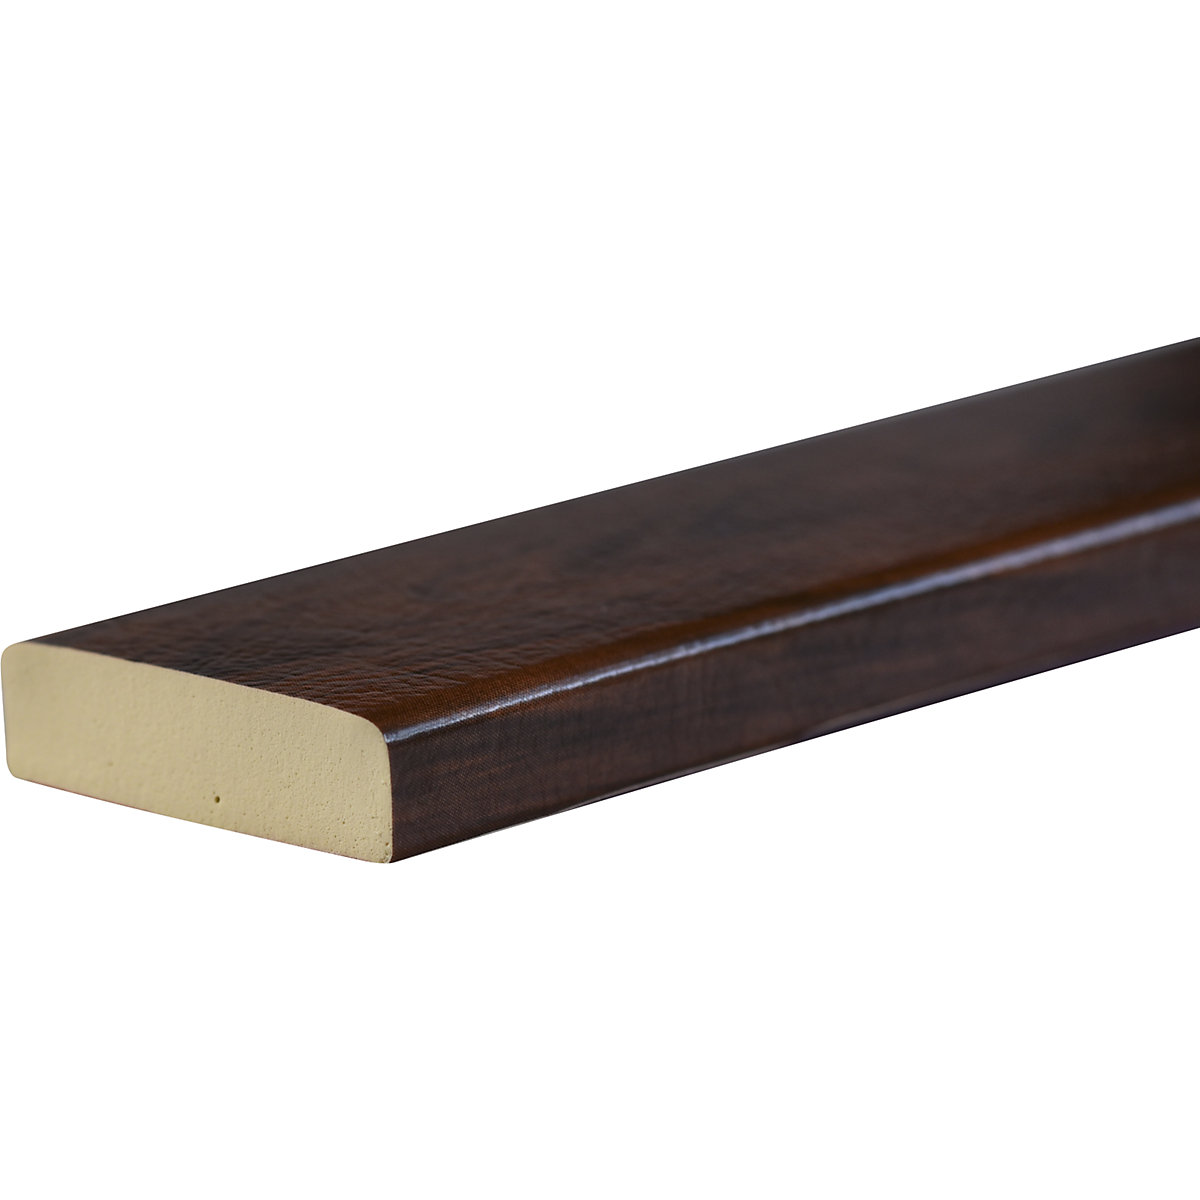 Protección de superficies Knuffi® – SHG, tipo S, pieza de 1 m, decoración de madera en color cereza-26